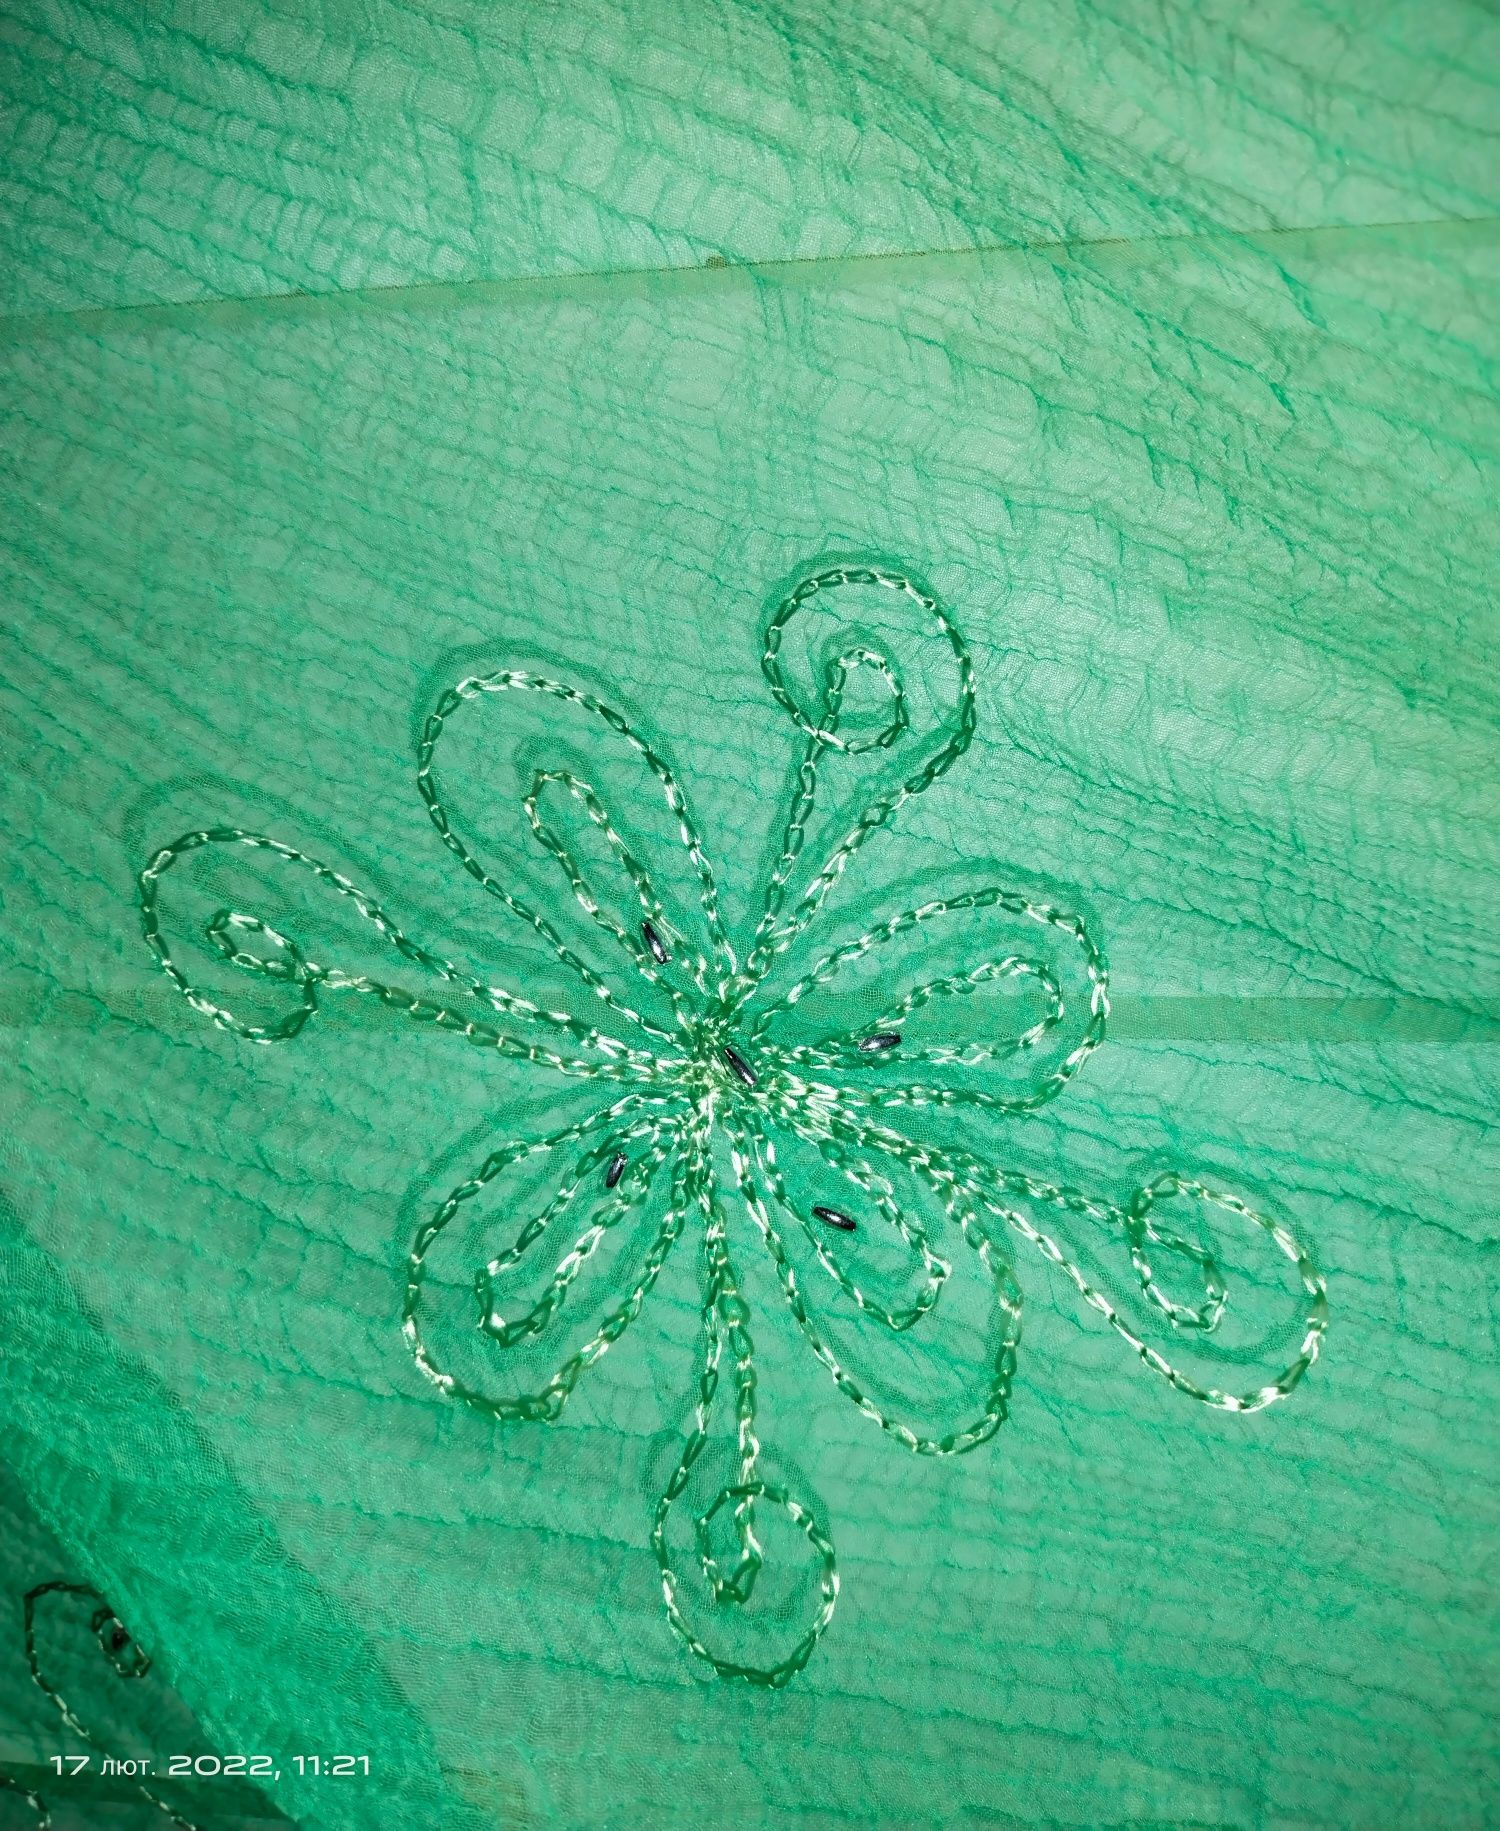 Парэо, ярко-зеленого цвета из жатой ткани.